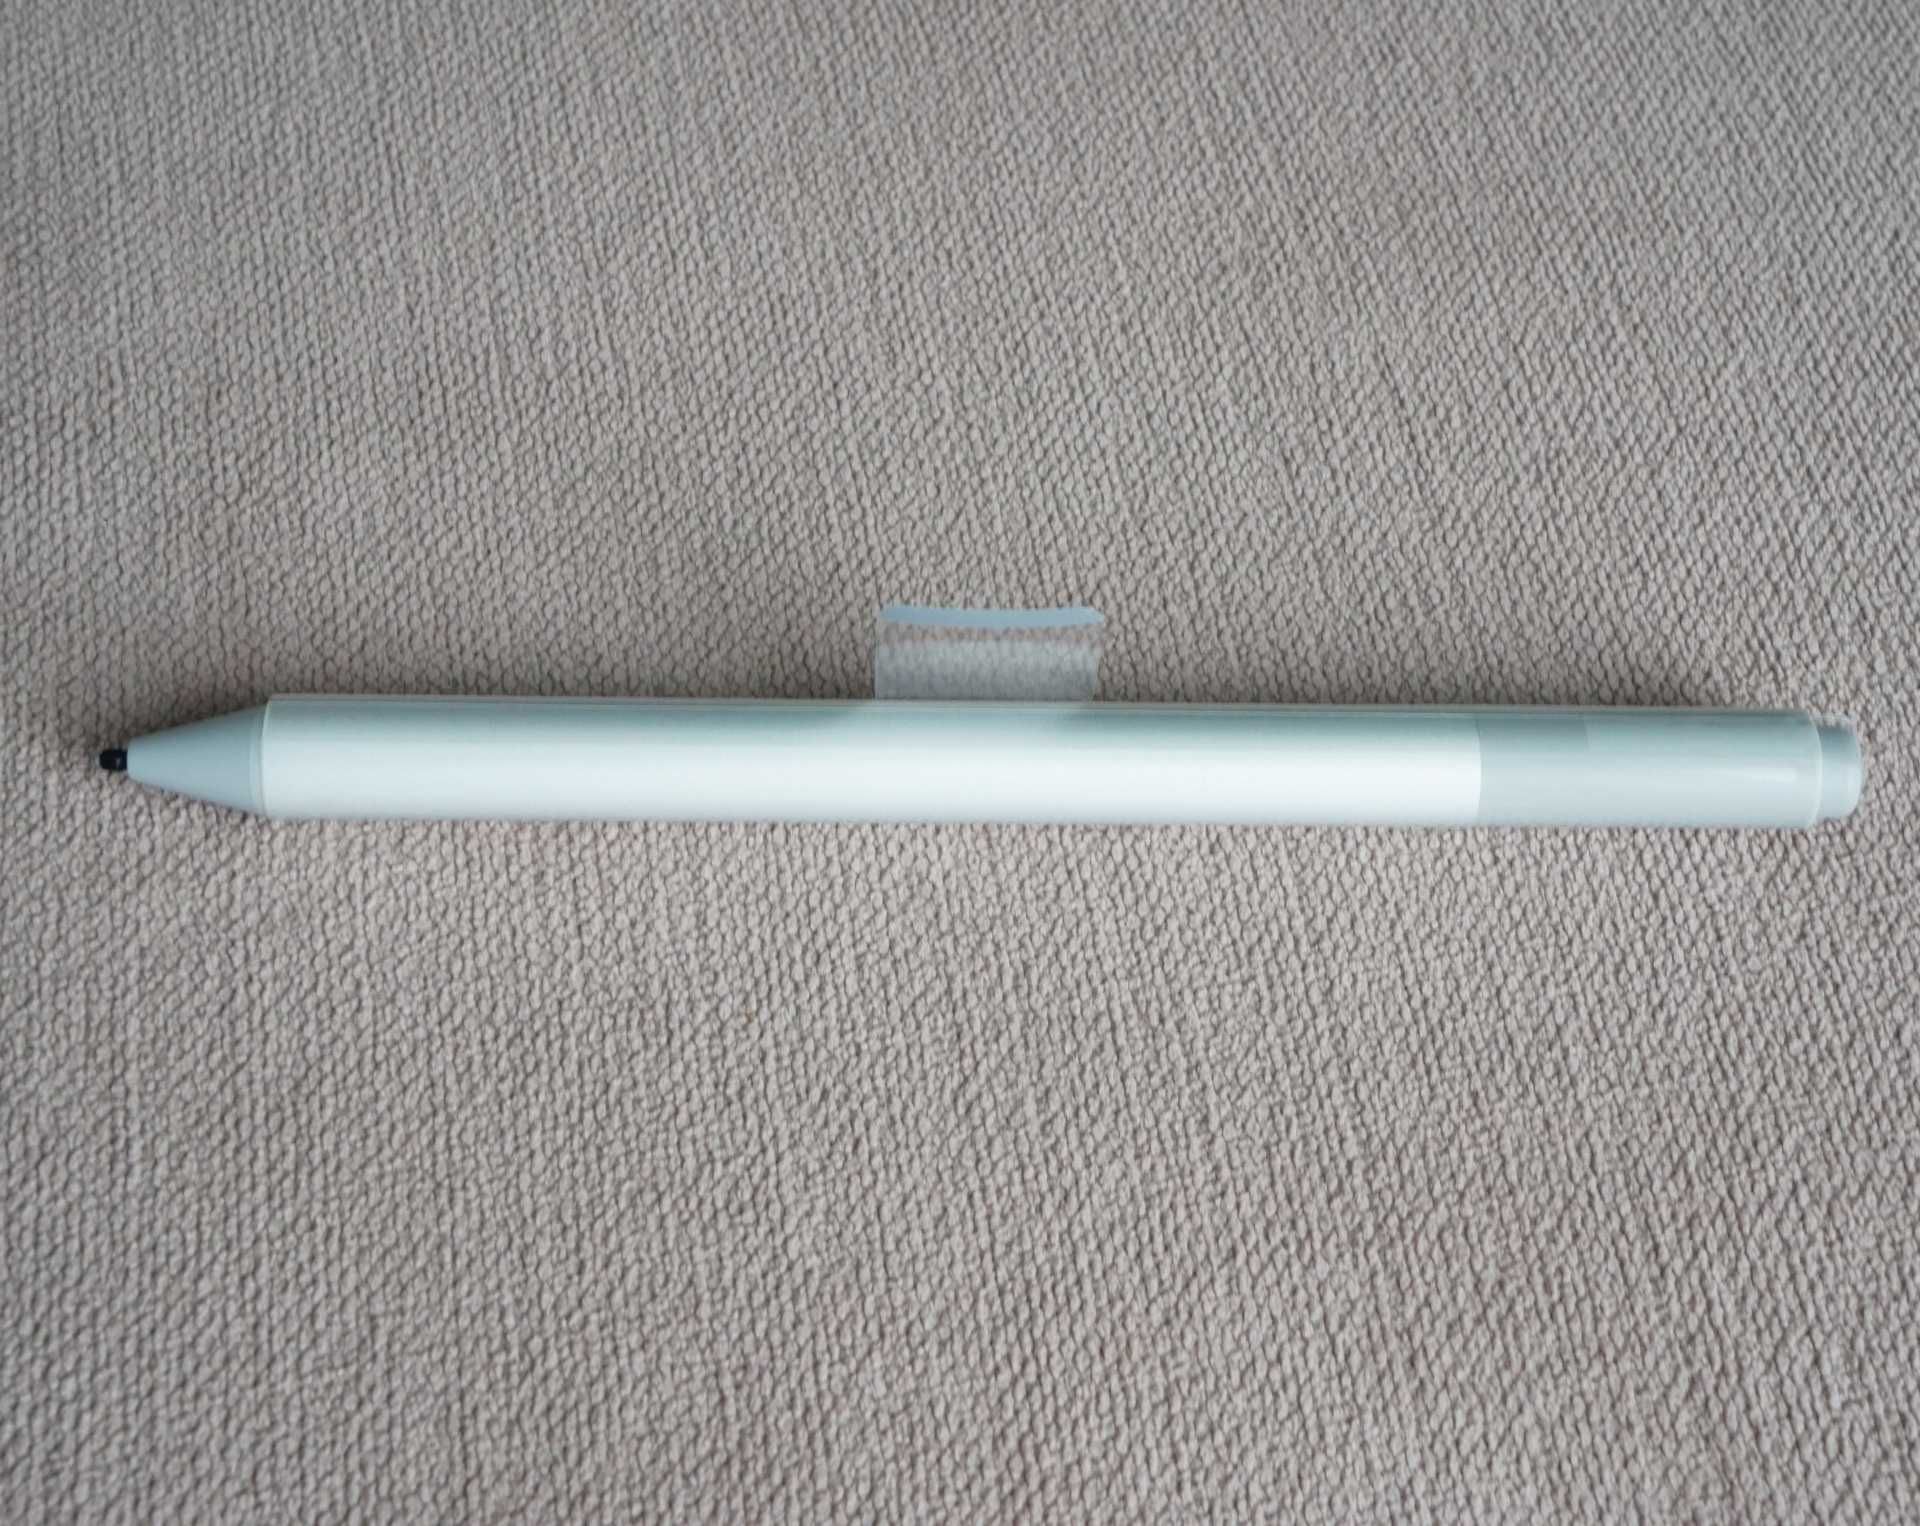 новий стілус Microsoft Pen Stylus 1776, 4096 рівнів чутливості Surface